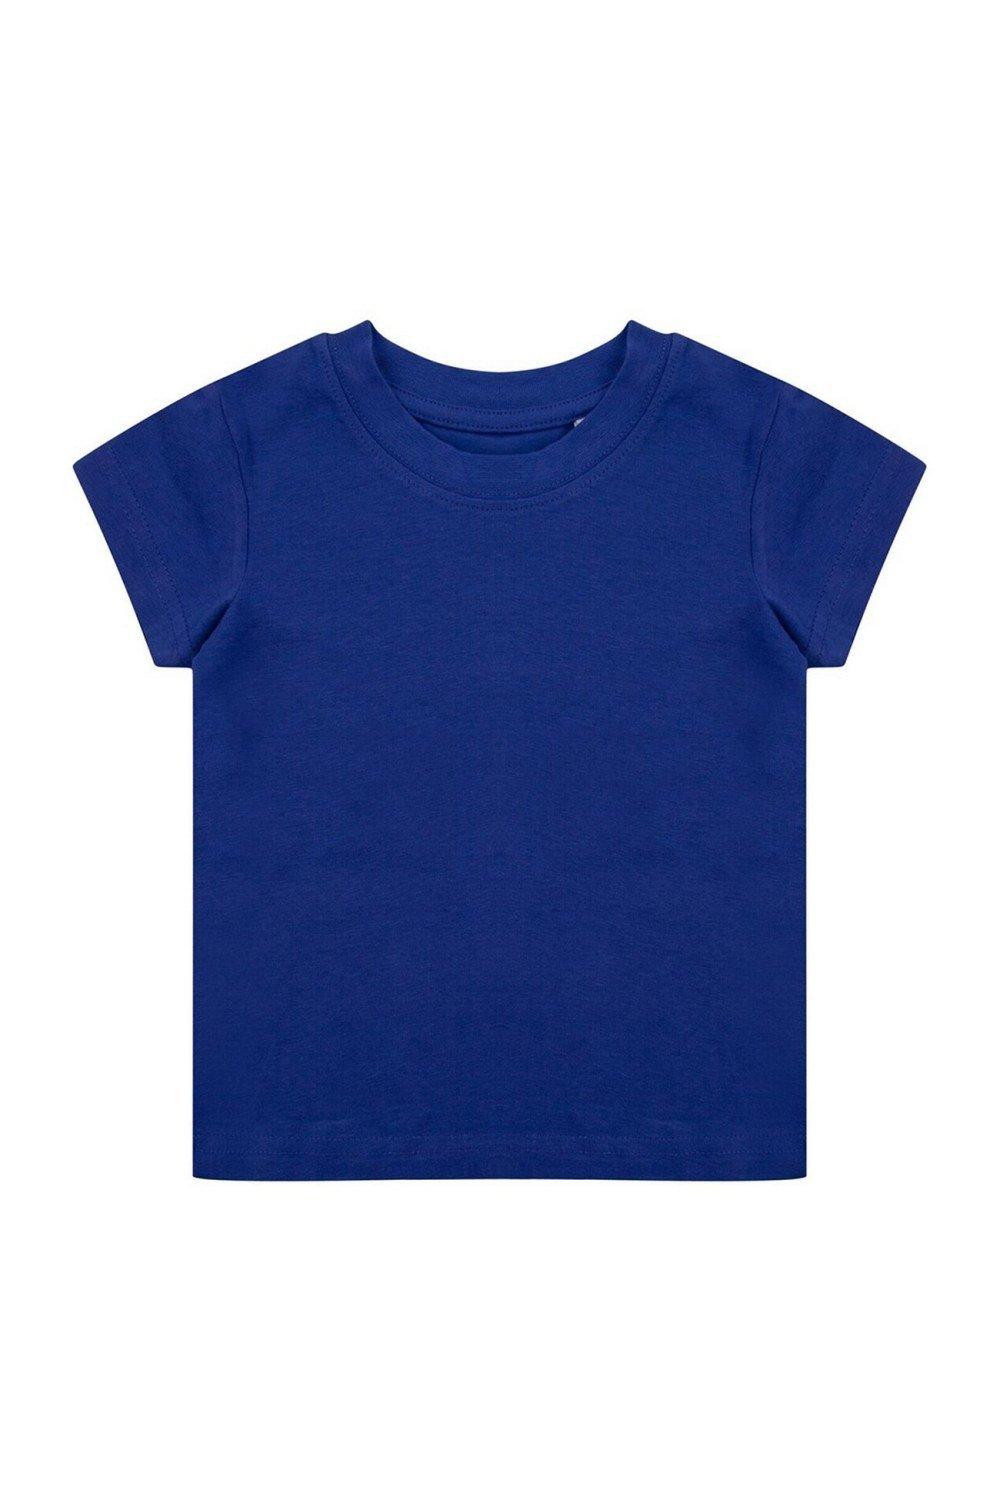 Органическая футболка Larkwood, синий костюм размер 18 24 мес